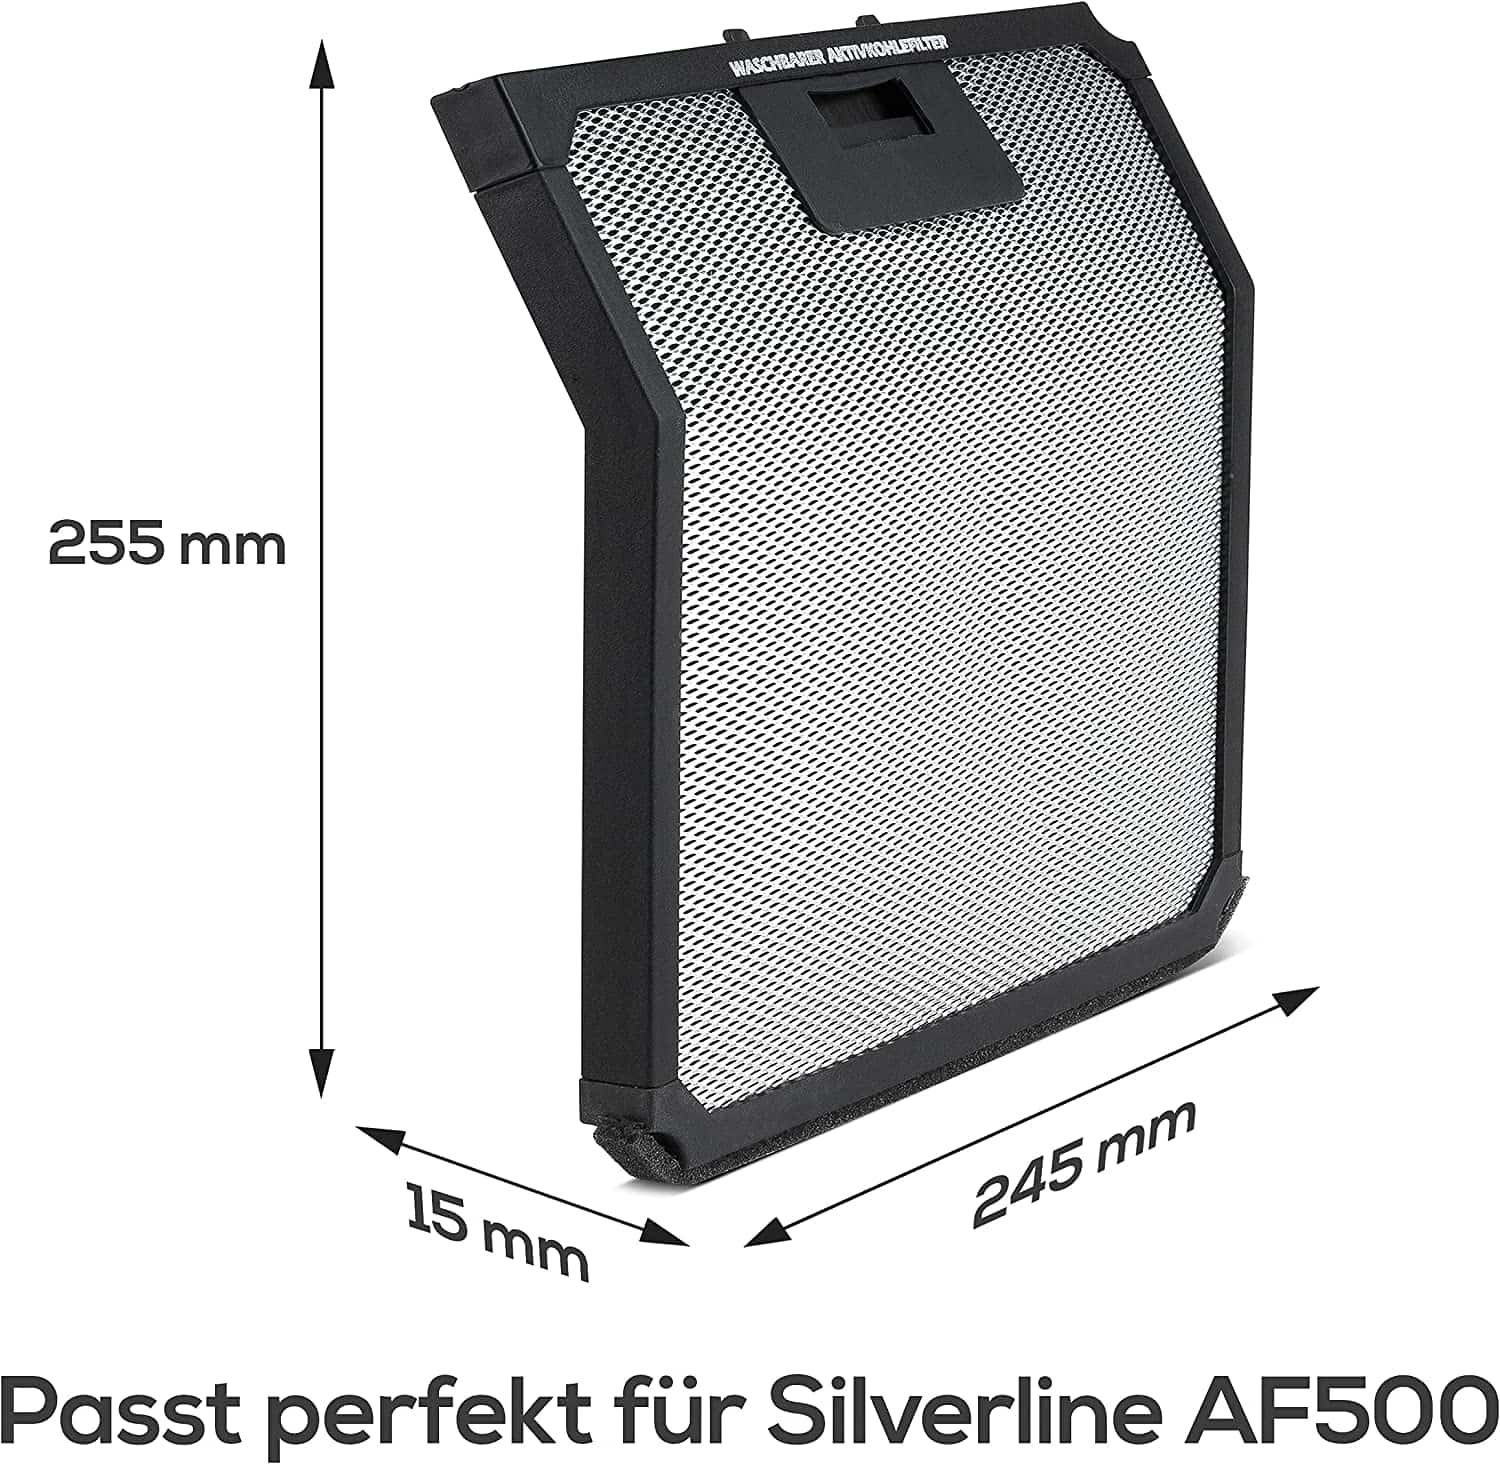 Aktivkohlefilter für Silverline AF 300 Aktivkohlefilter